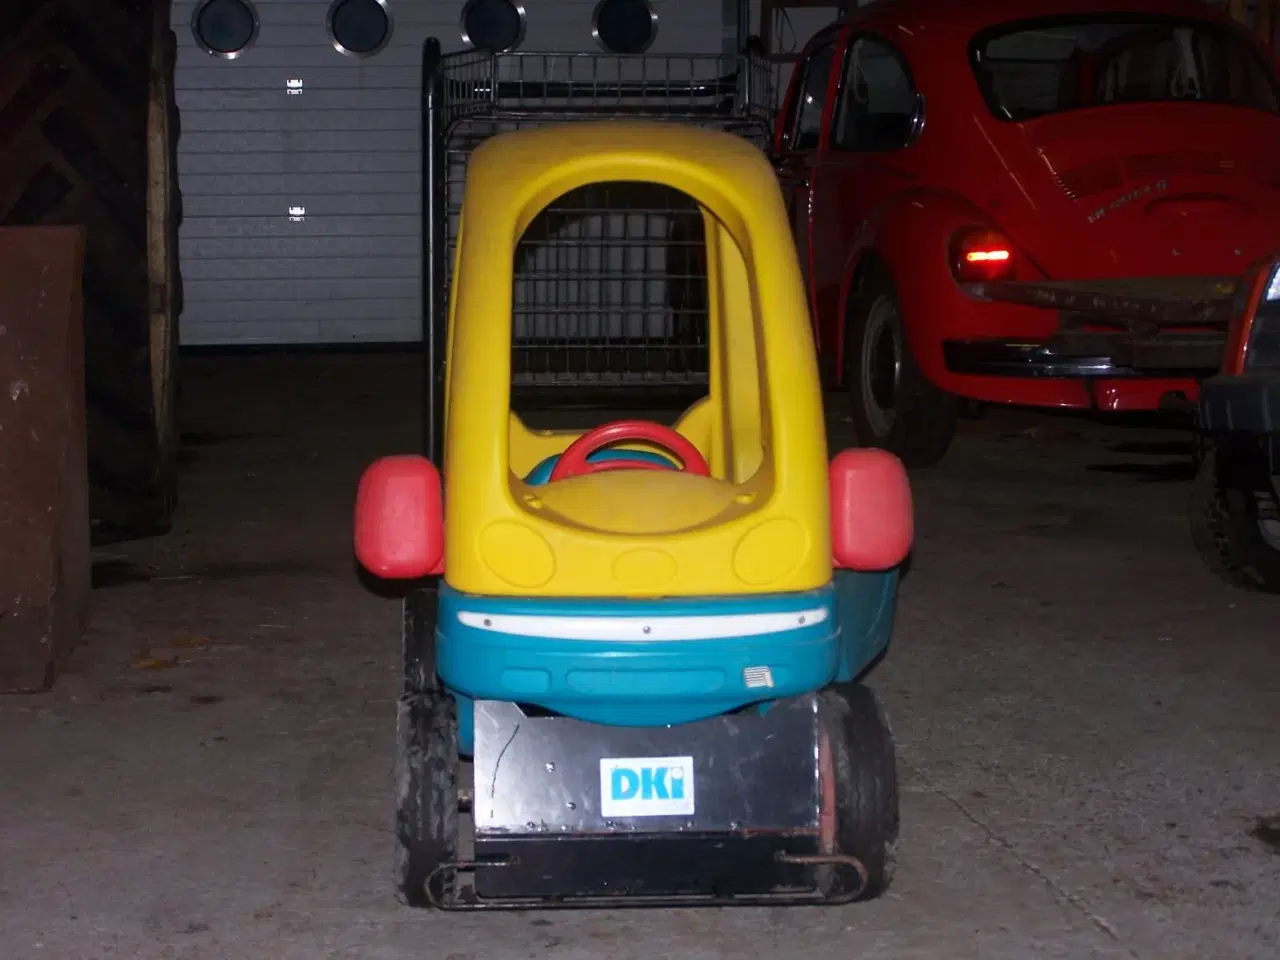 Billede 1 - Bil som indkøbsvogn